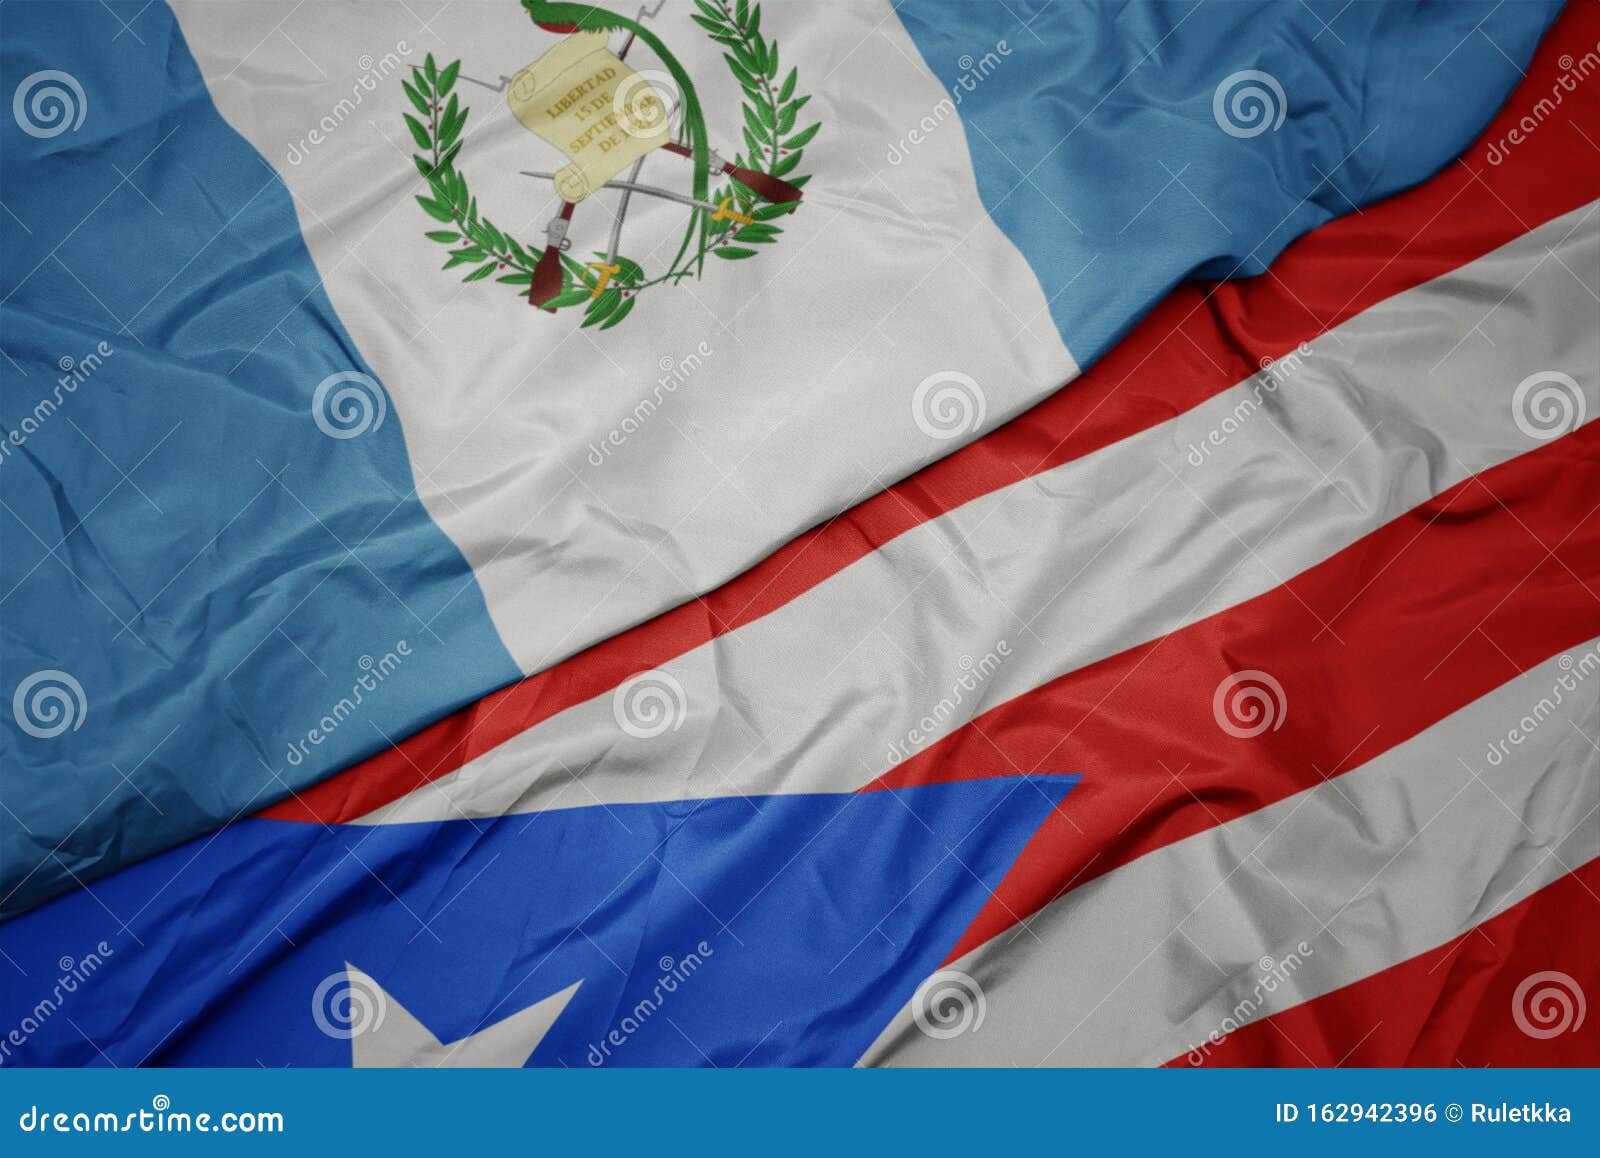 Drapeau Coloré De Puerto Rico Et Drapeau National Du Guatemala